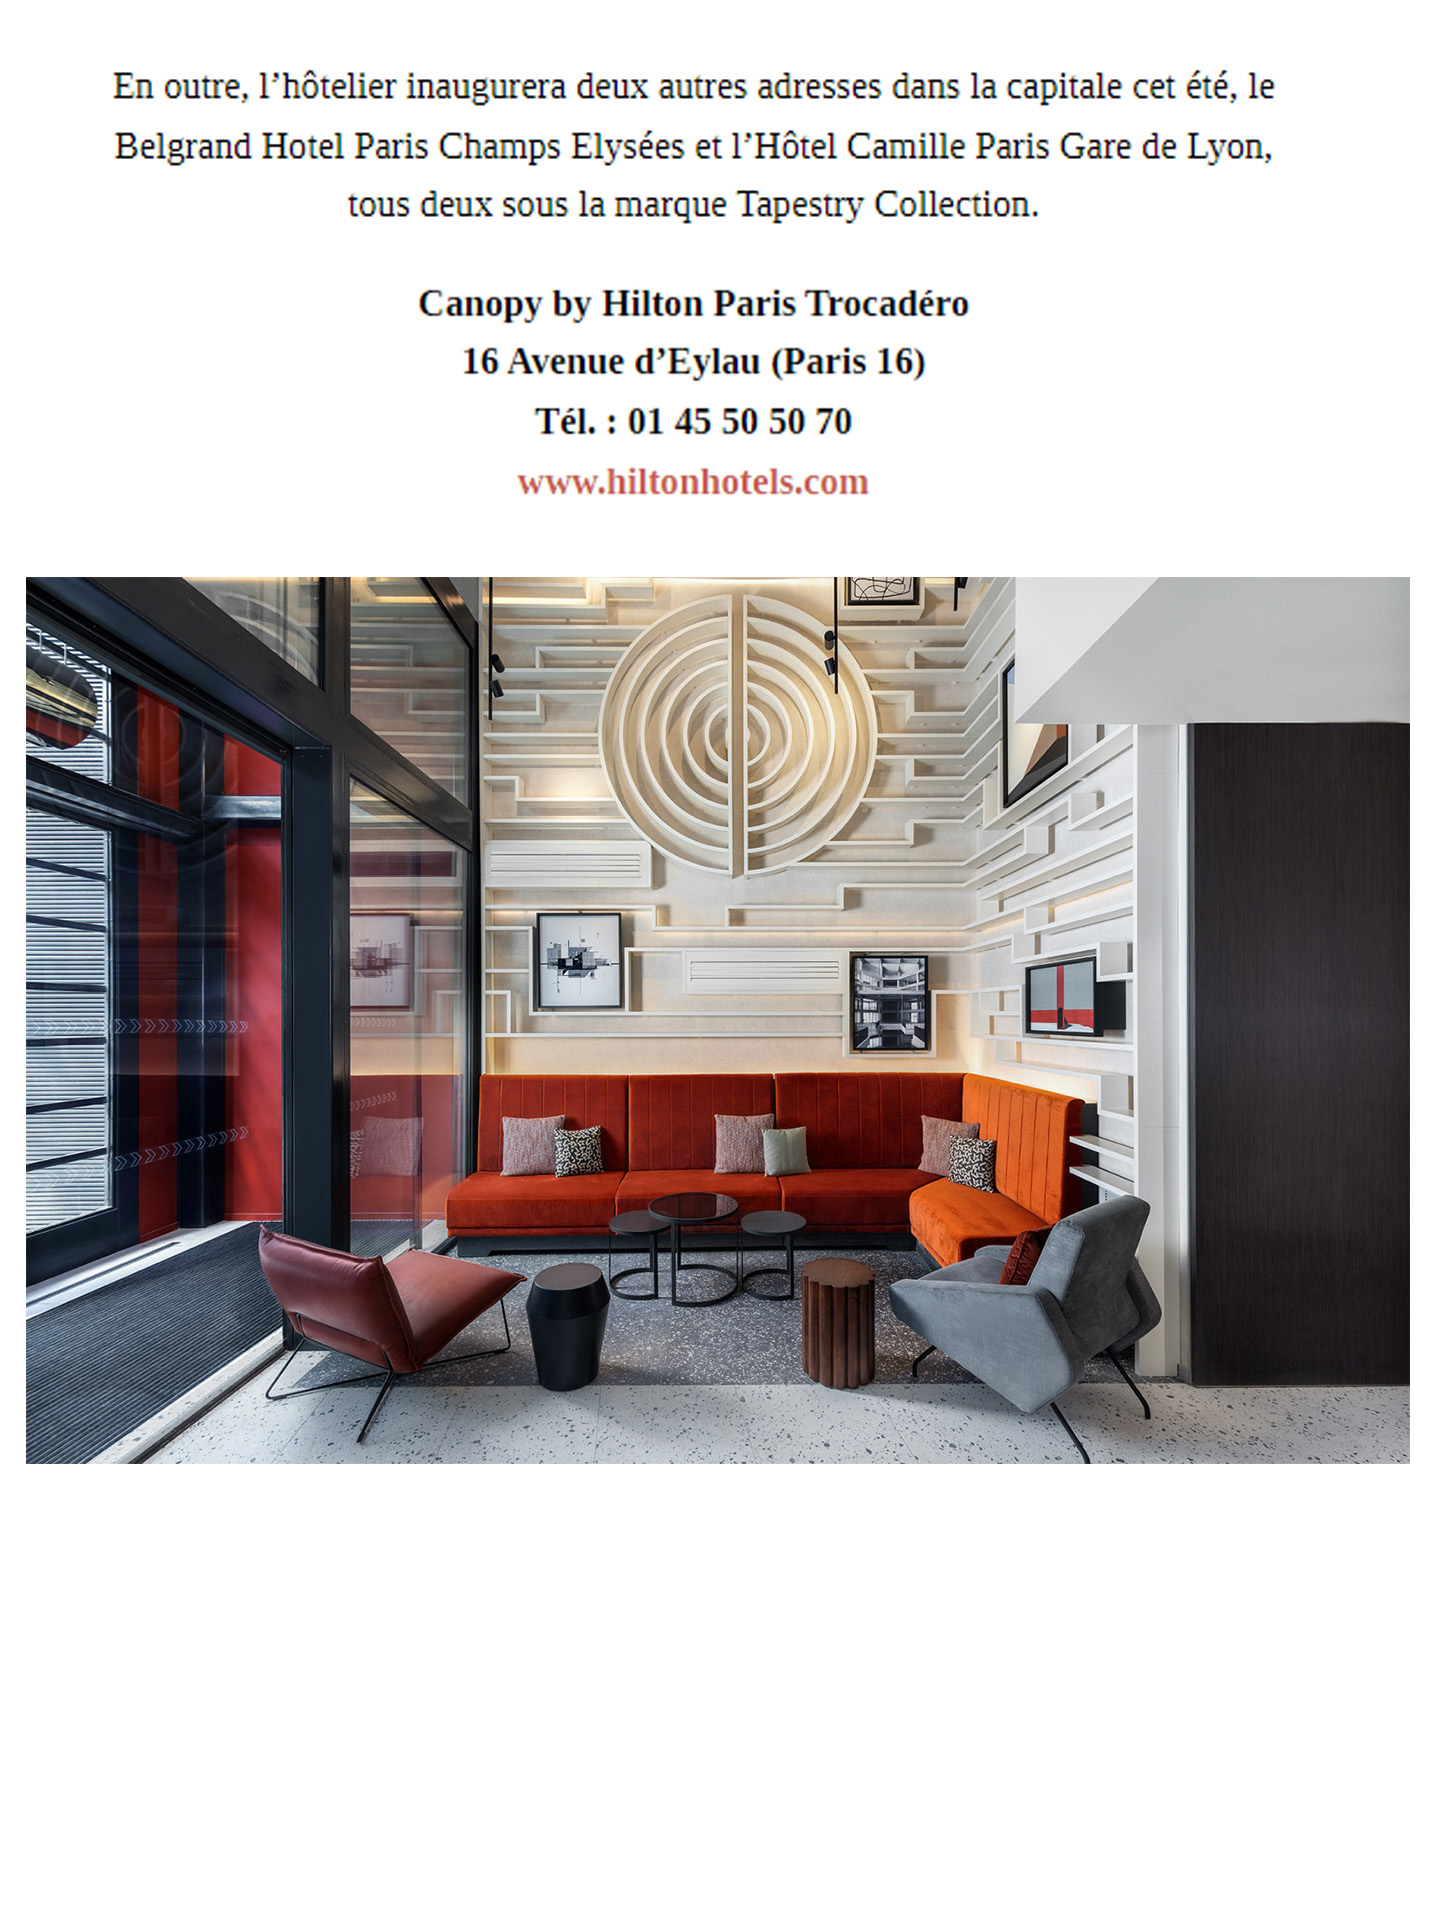 Article sur le Canopy by Hilton Paris Trocadéro réalisé par le studio jean-Philippe Nuel dans le magazine the good life, nouvel hotel lifestyle, architecture d'intérieur de luxe